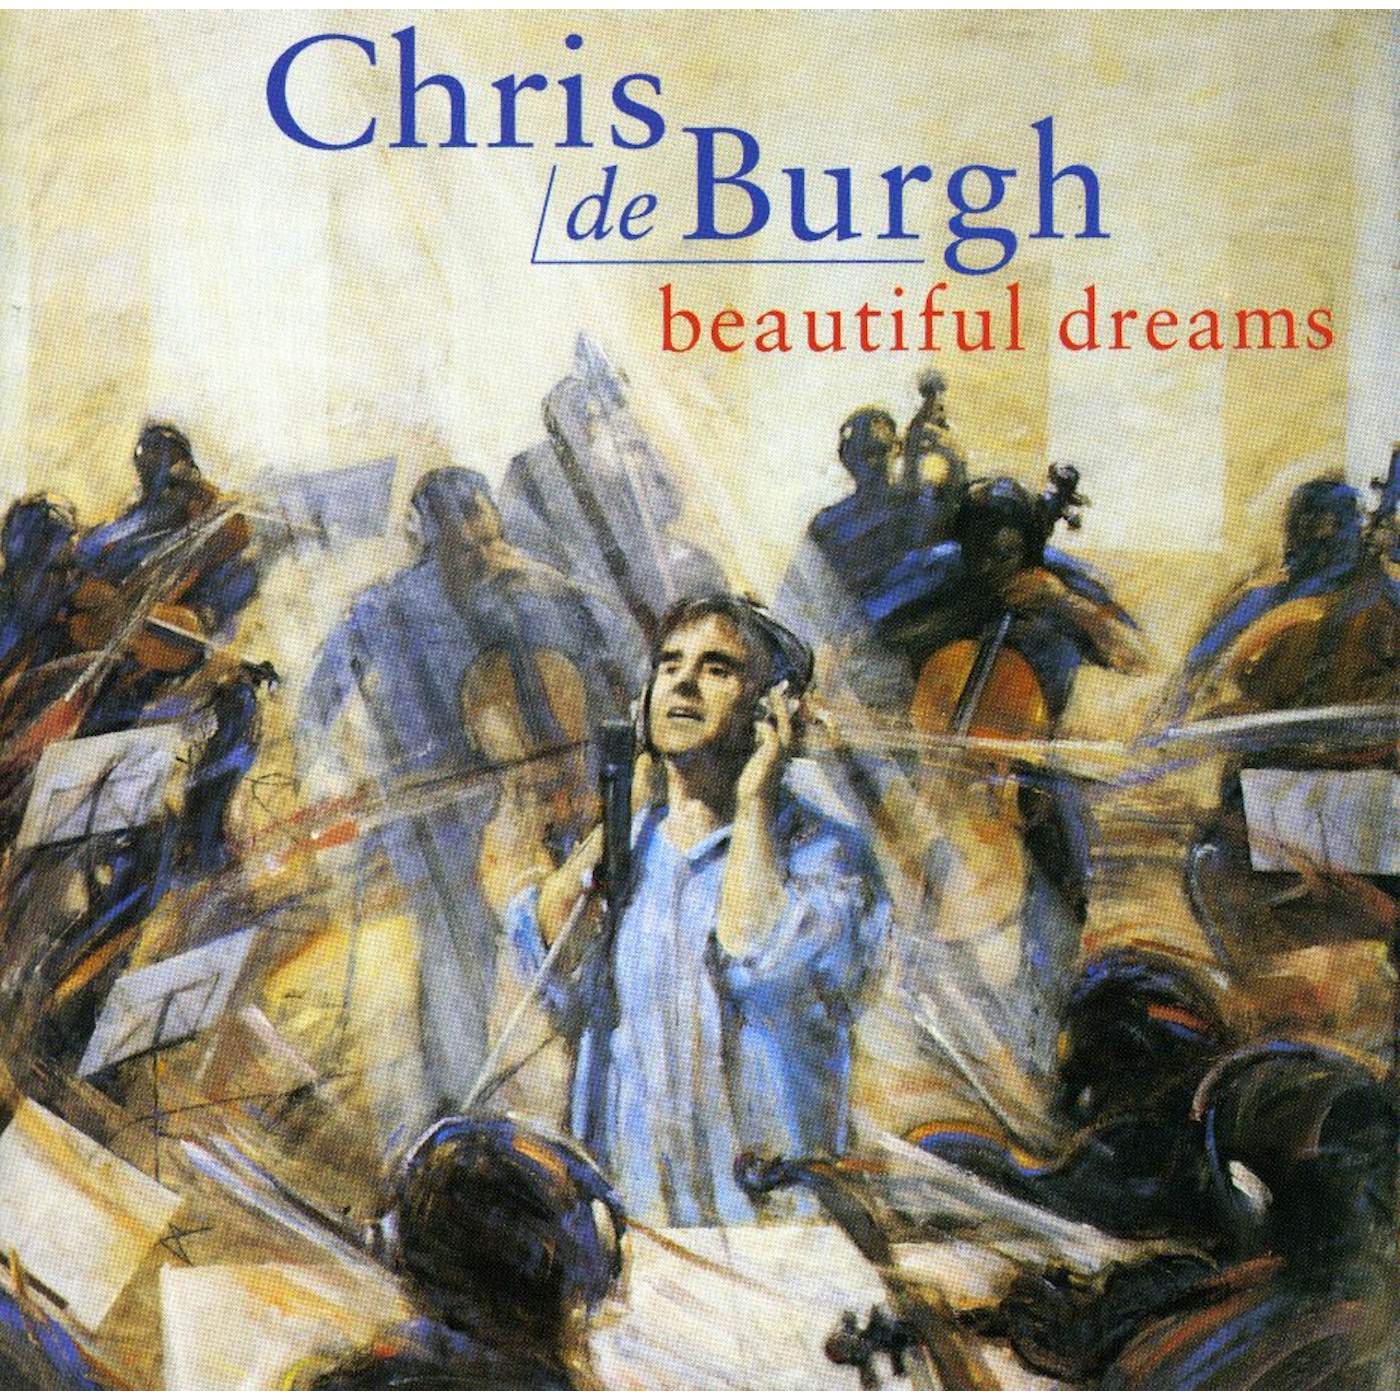 Chris de Burgh BEAUTIFUL DREAMS CD